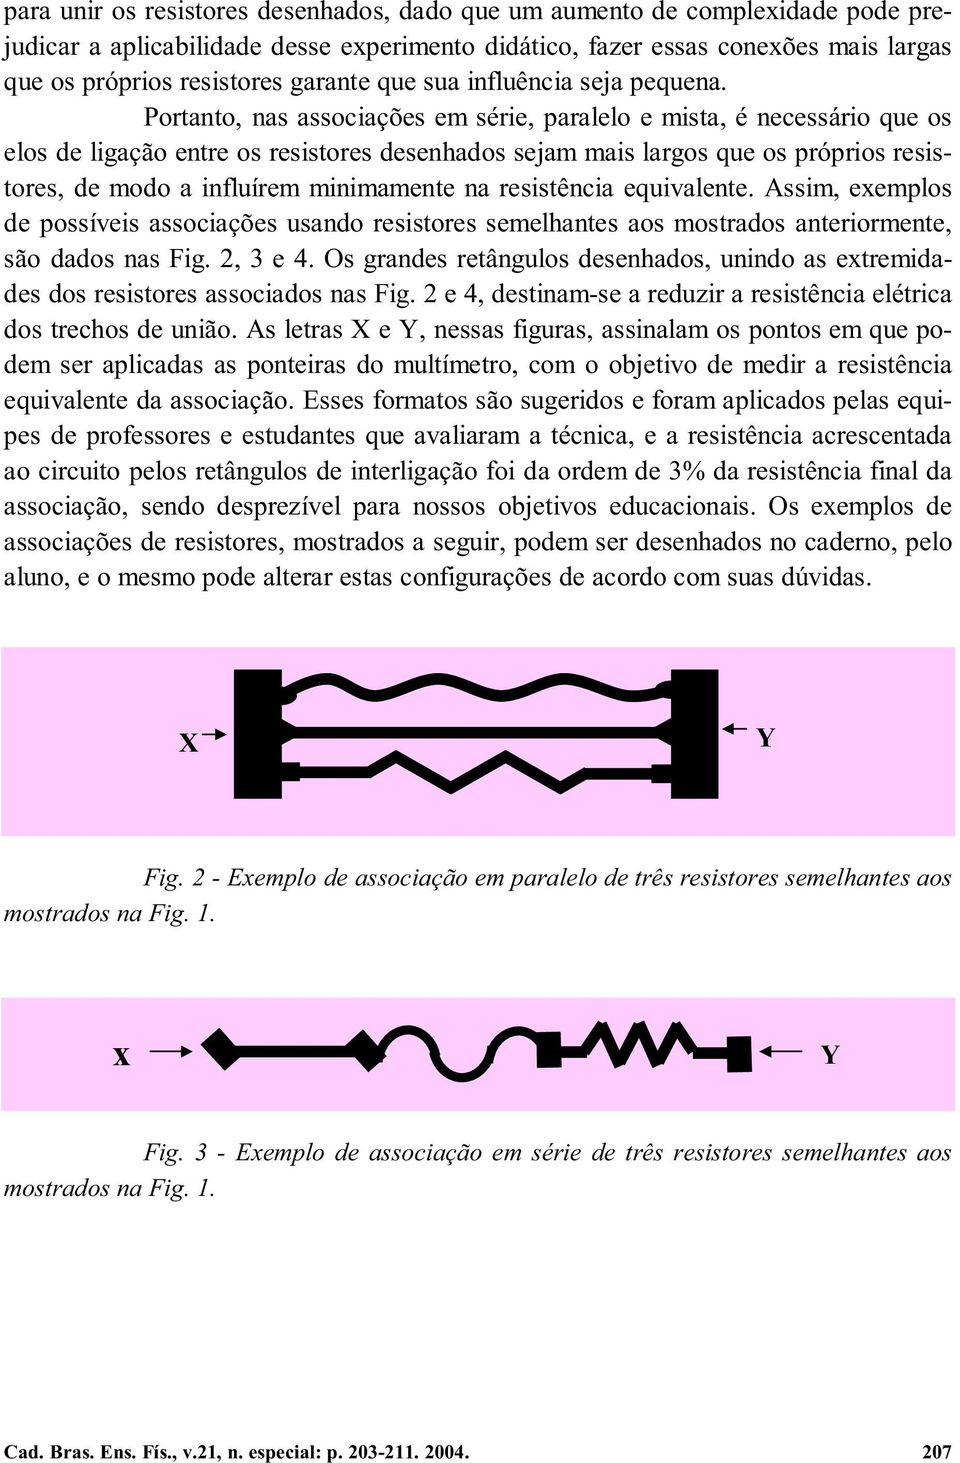 Portanto, nas associações em série, paralelo e mista, é necessário que os elos de ligação entre os resistores desenhados sejam mais largos que os próprios resistores, de modo a influírem minimamente